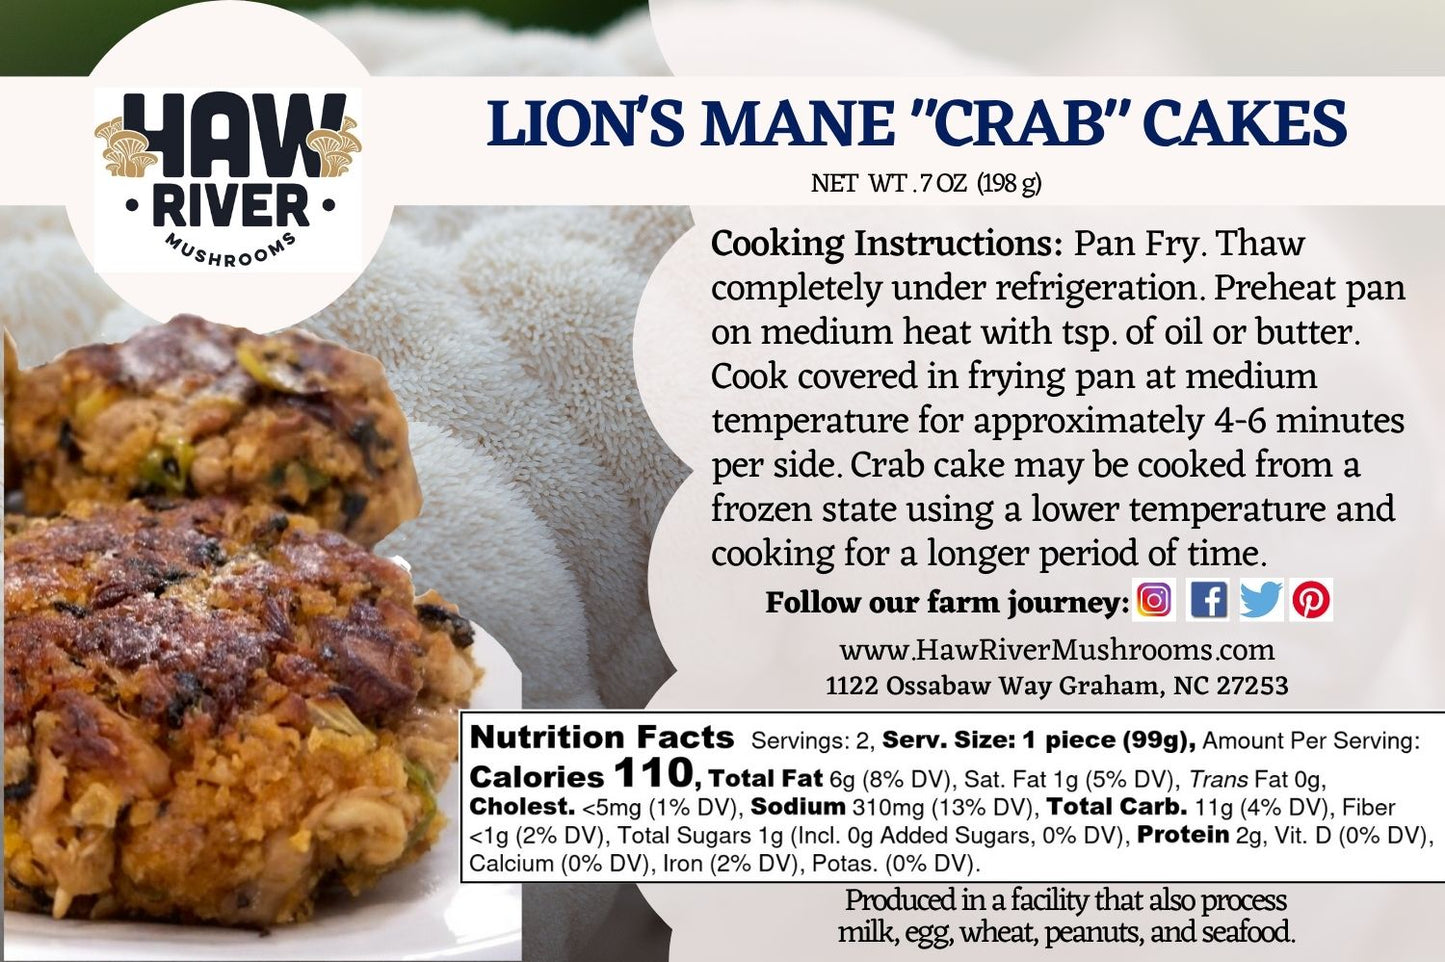 Lion's Mane "Crab" Cakes